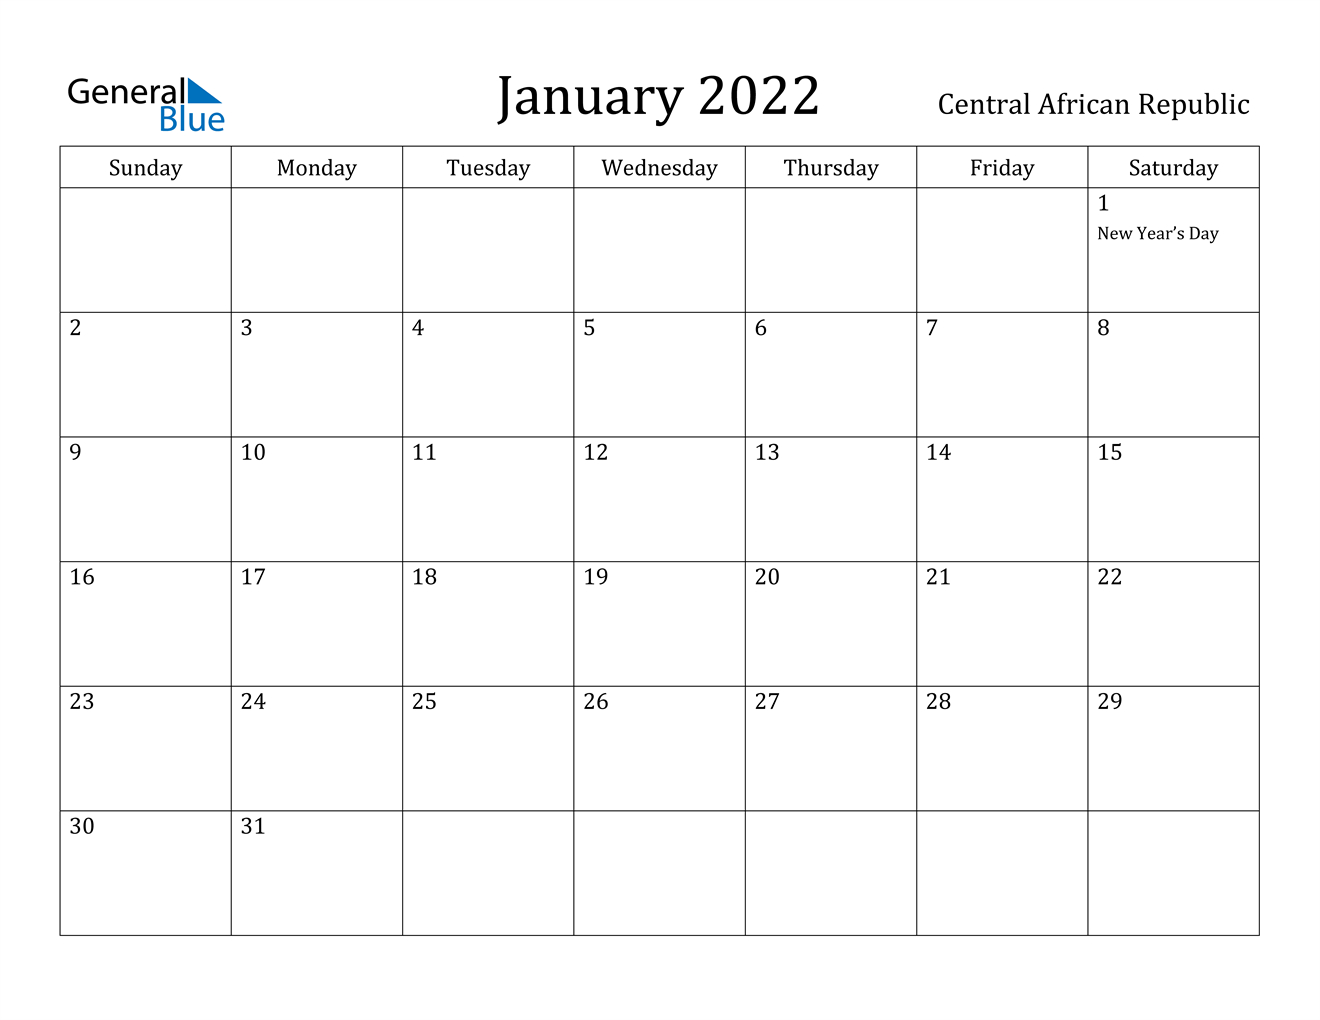 Get April 29 2022 Calendar